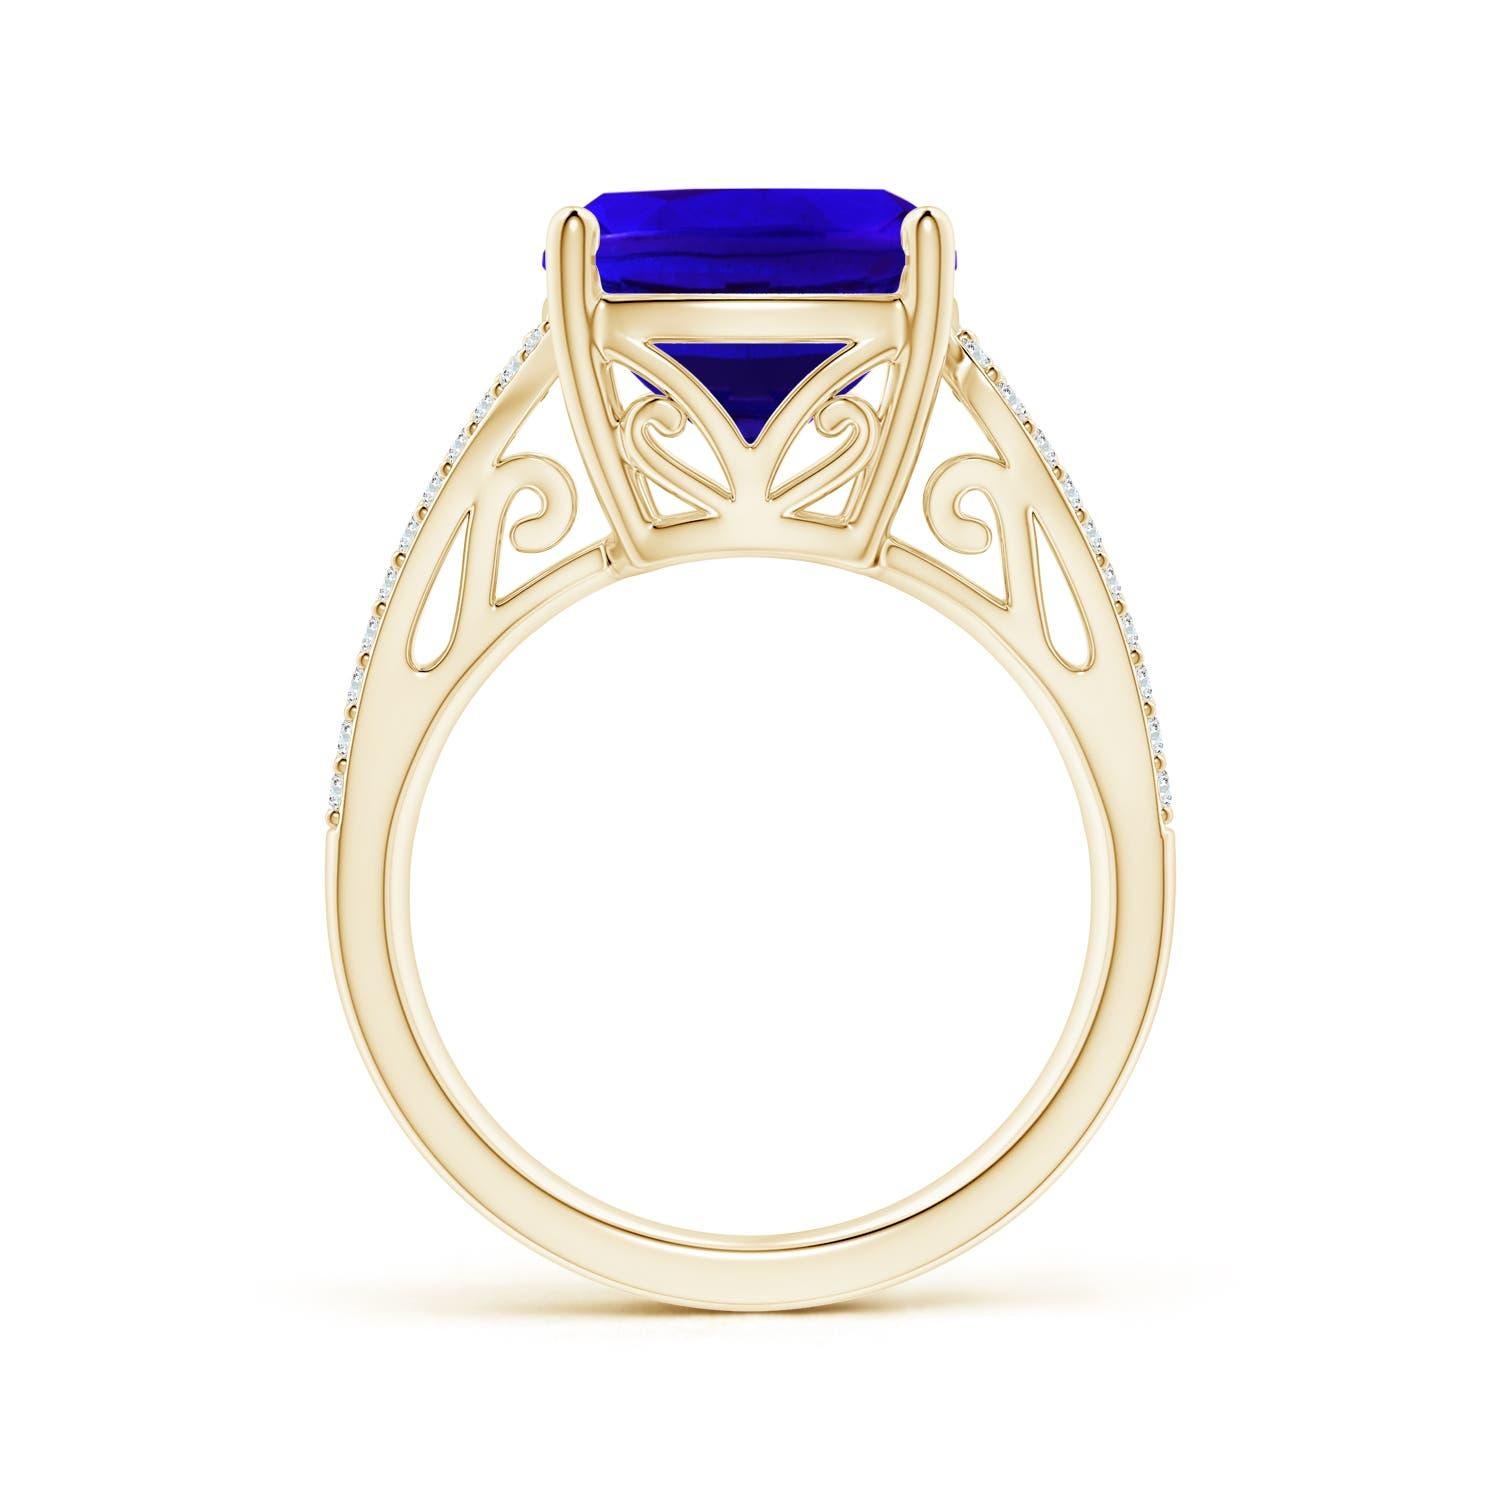 Im Angebot: Dieser Vintage-inspirierte Ring mit verschnörkelten Details und dem atemberaubenden GIA-zertifizierten () 2